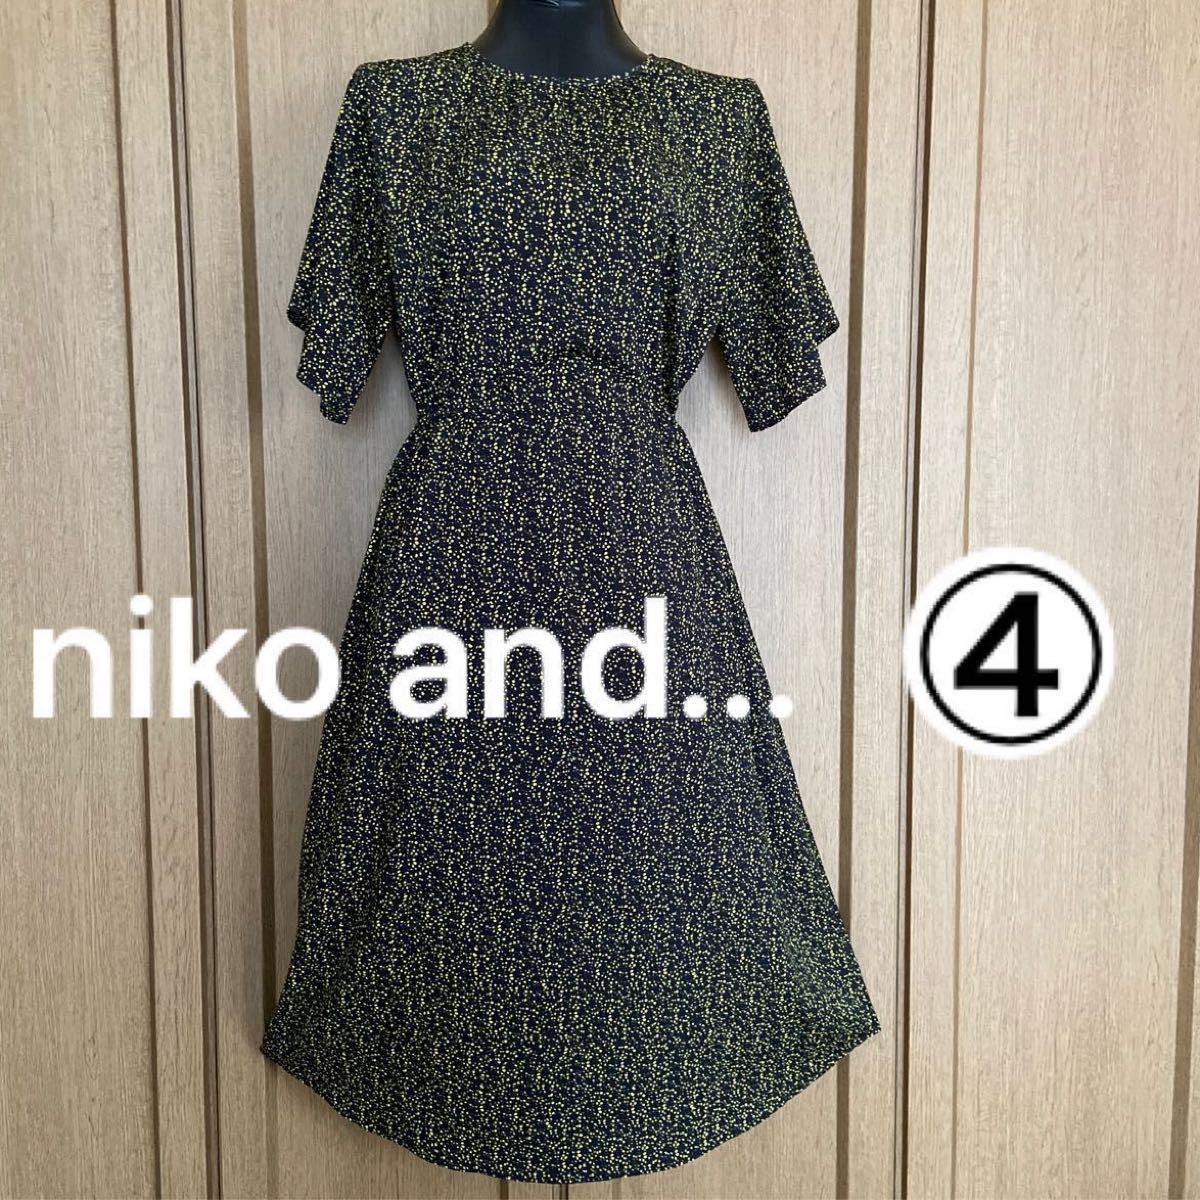 niko and...・ニコアンド・ワンピース・ウエスト紐調節・小花ドット柄・ゆったりサイズ